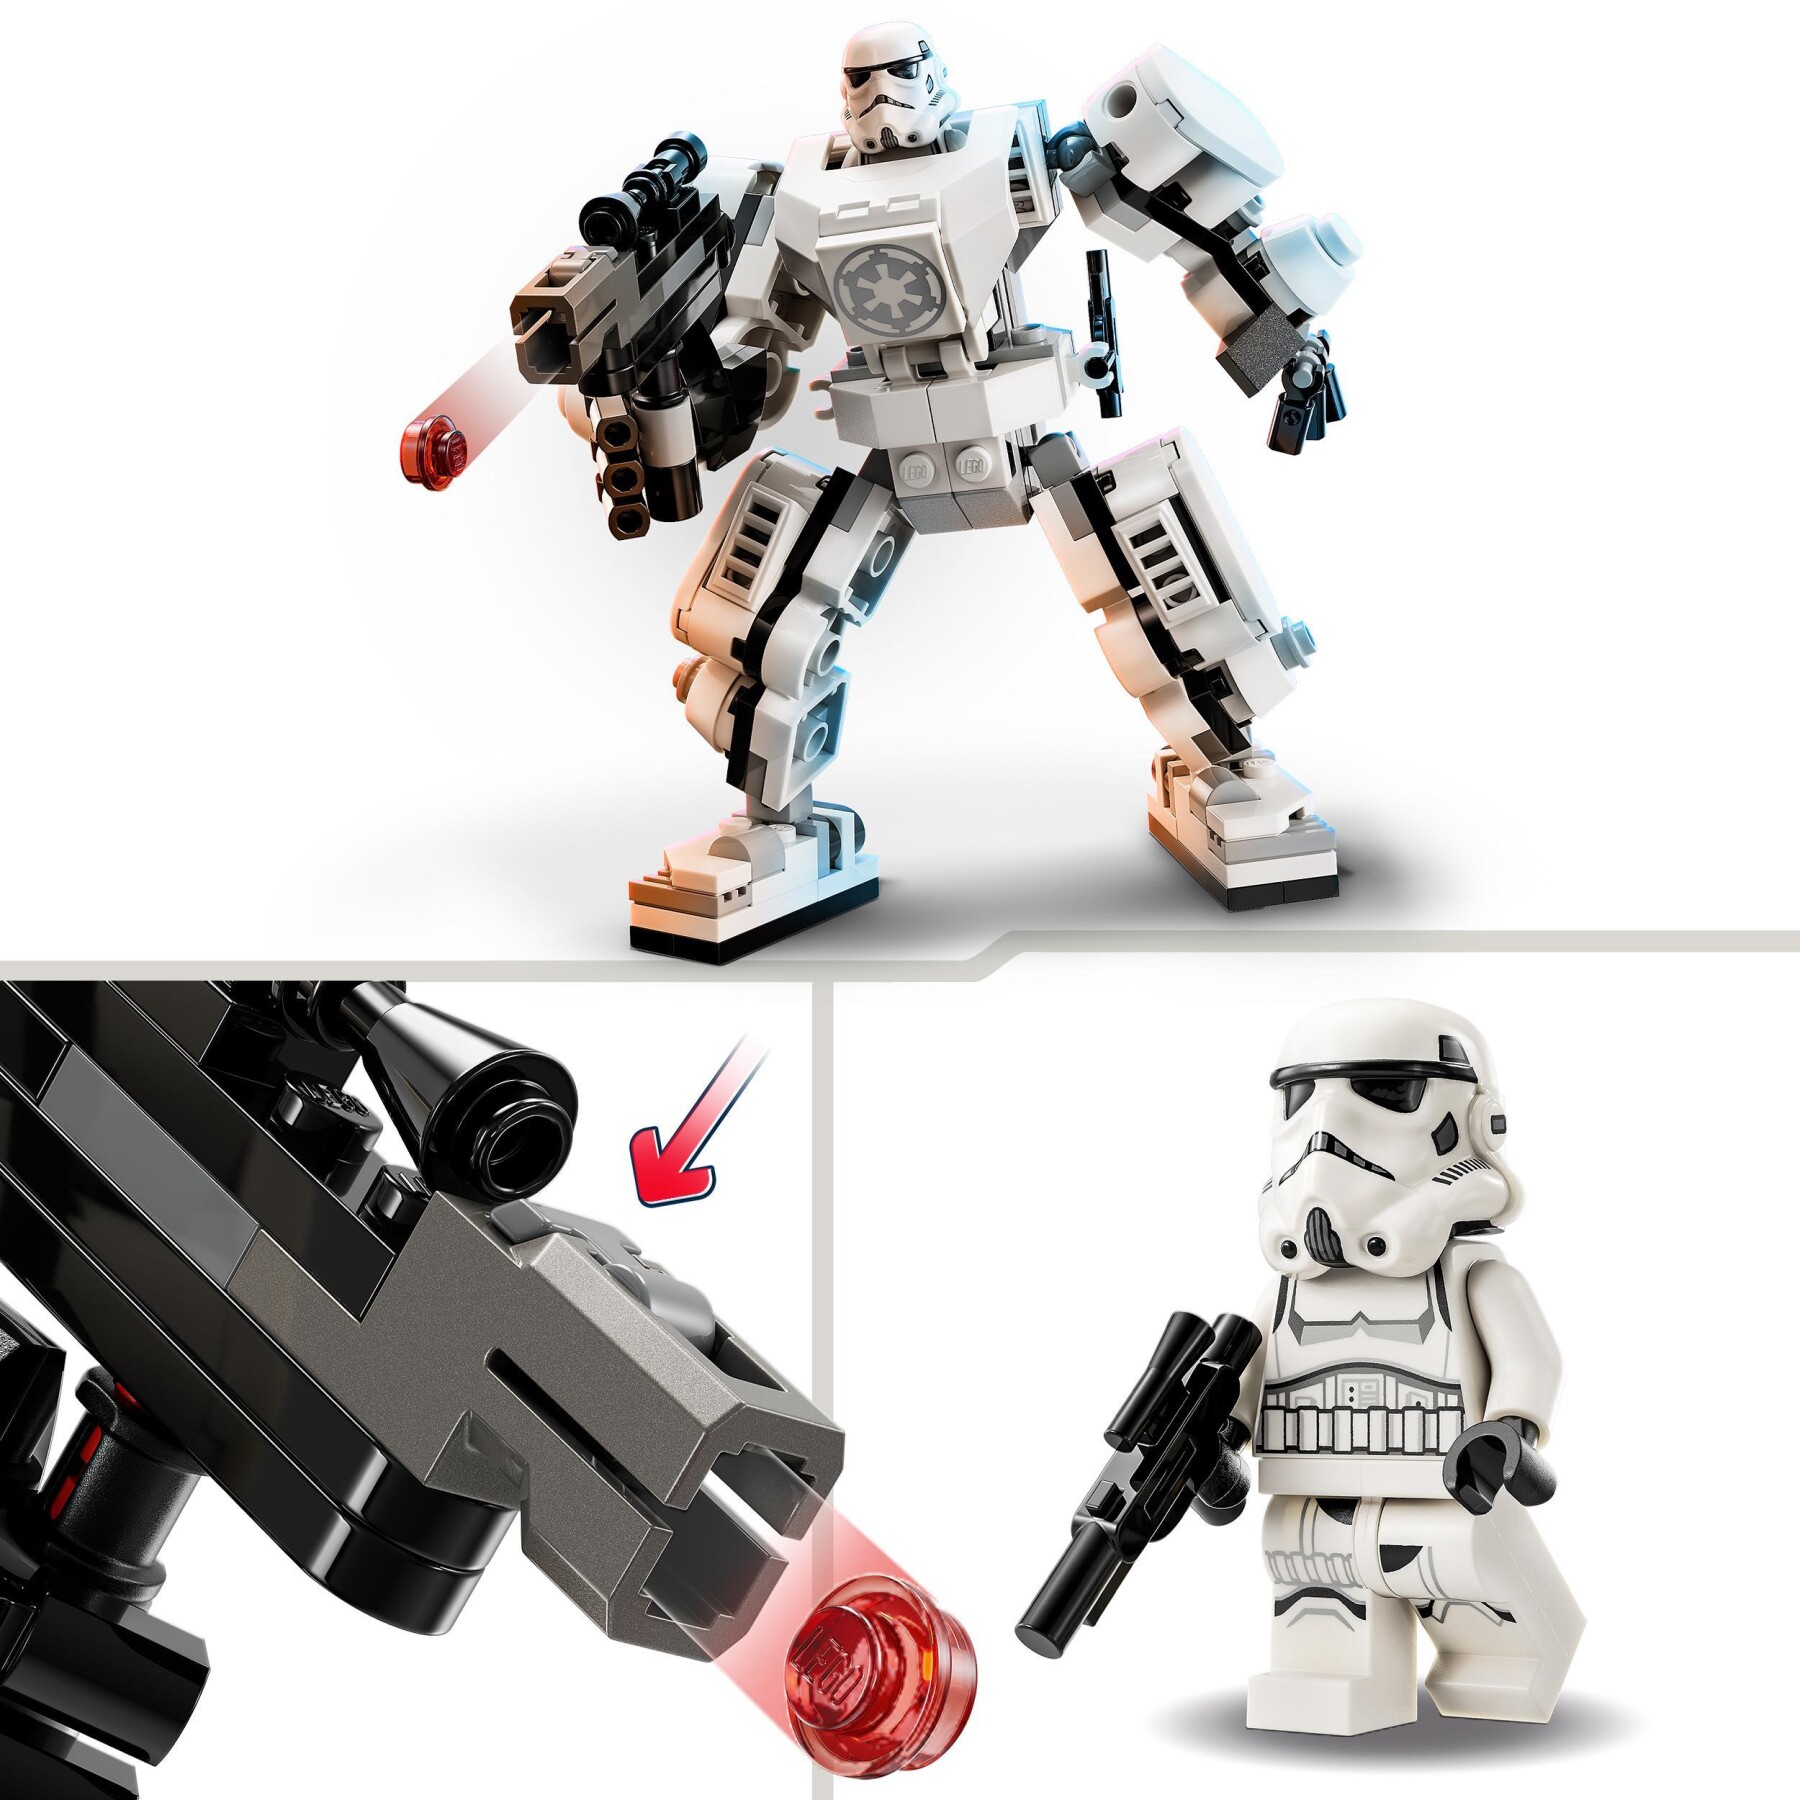 Lego star wars 75370 mech di stormtrooper, action figure snodabile da costruire con cabina per minifigure e grande blaster - LEGO STAR WARS, Star Wars